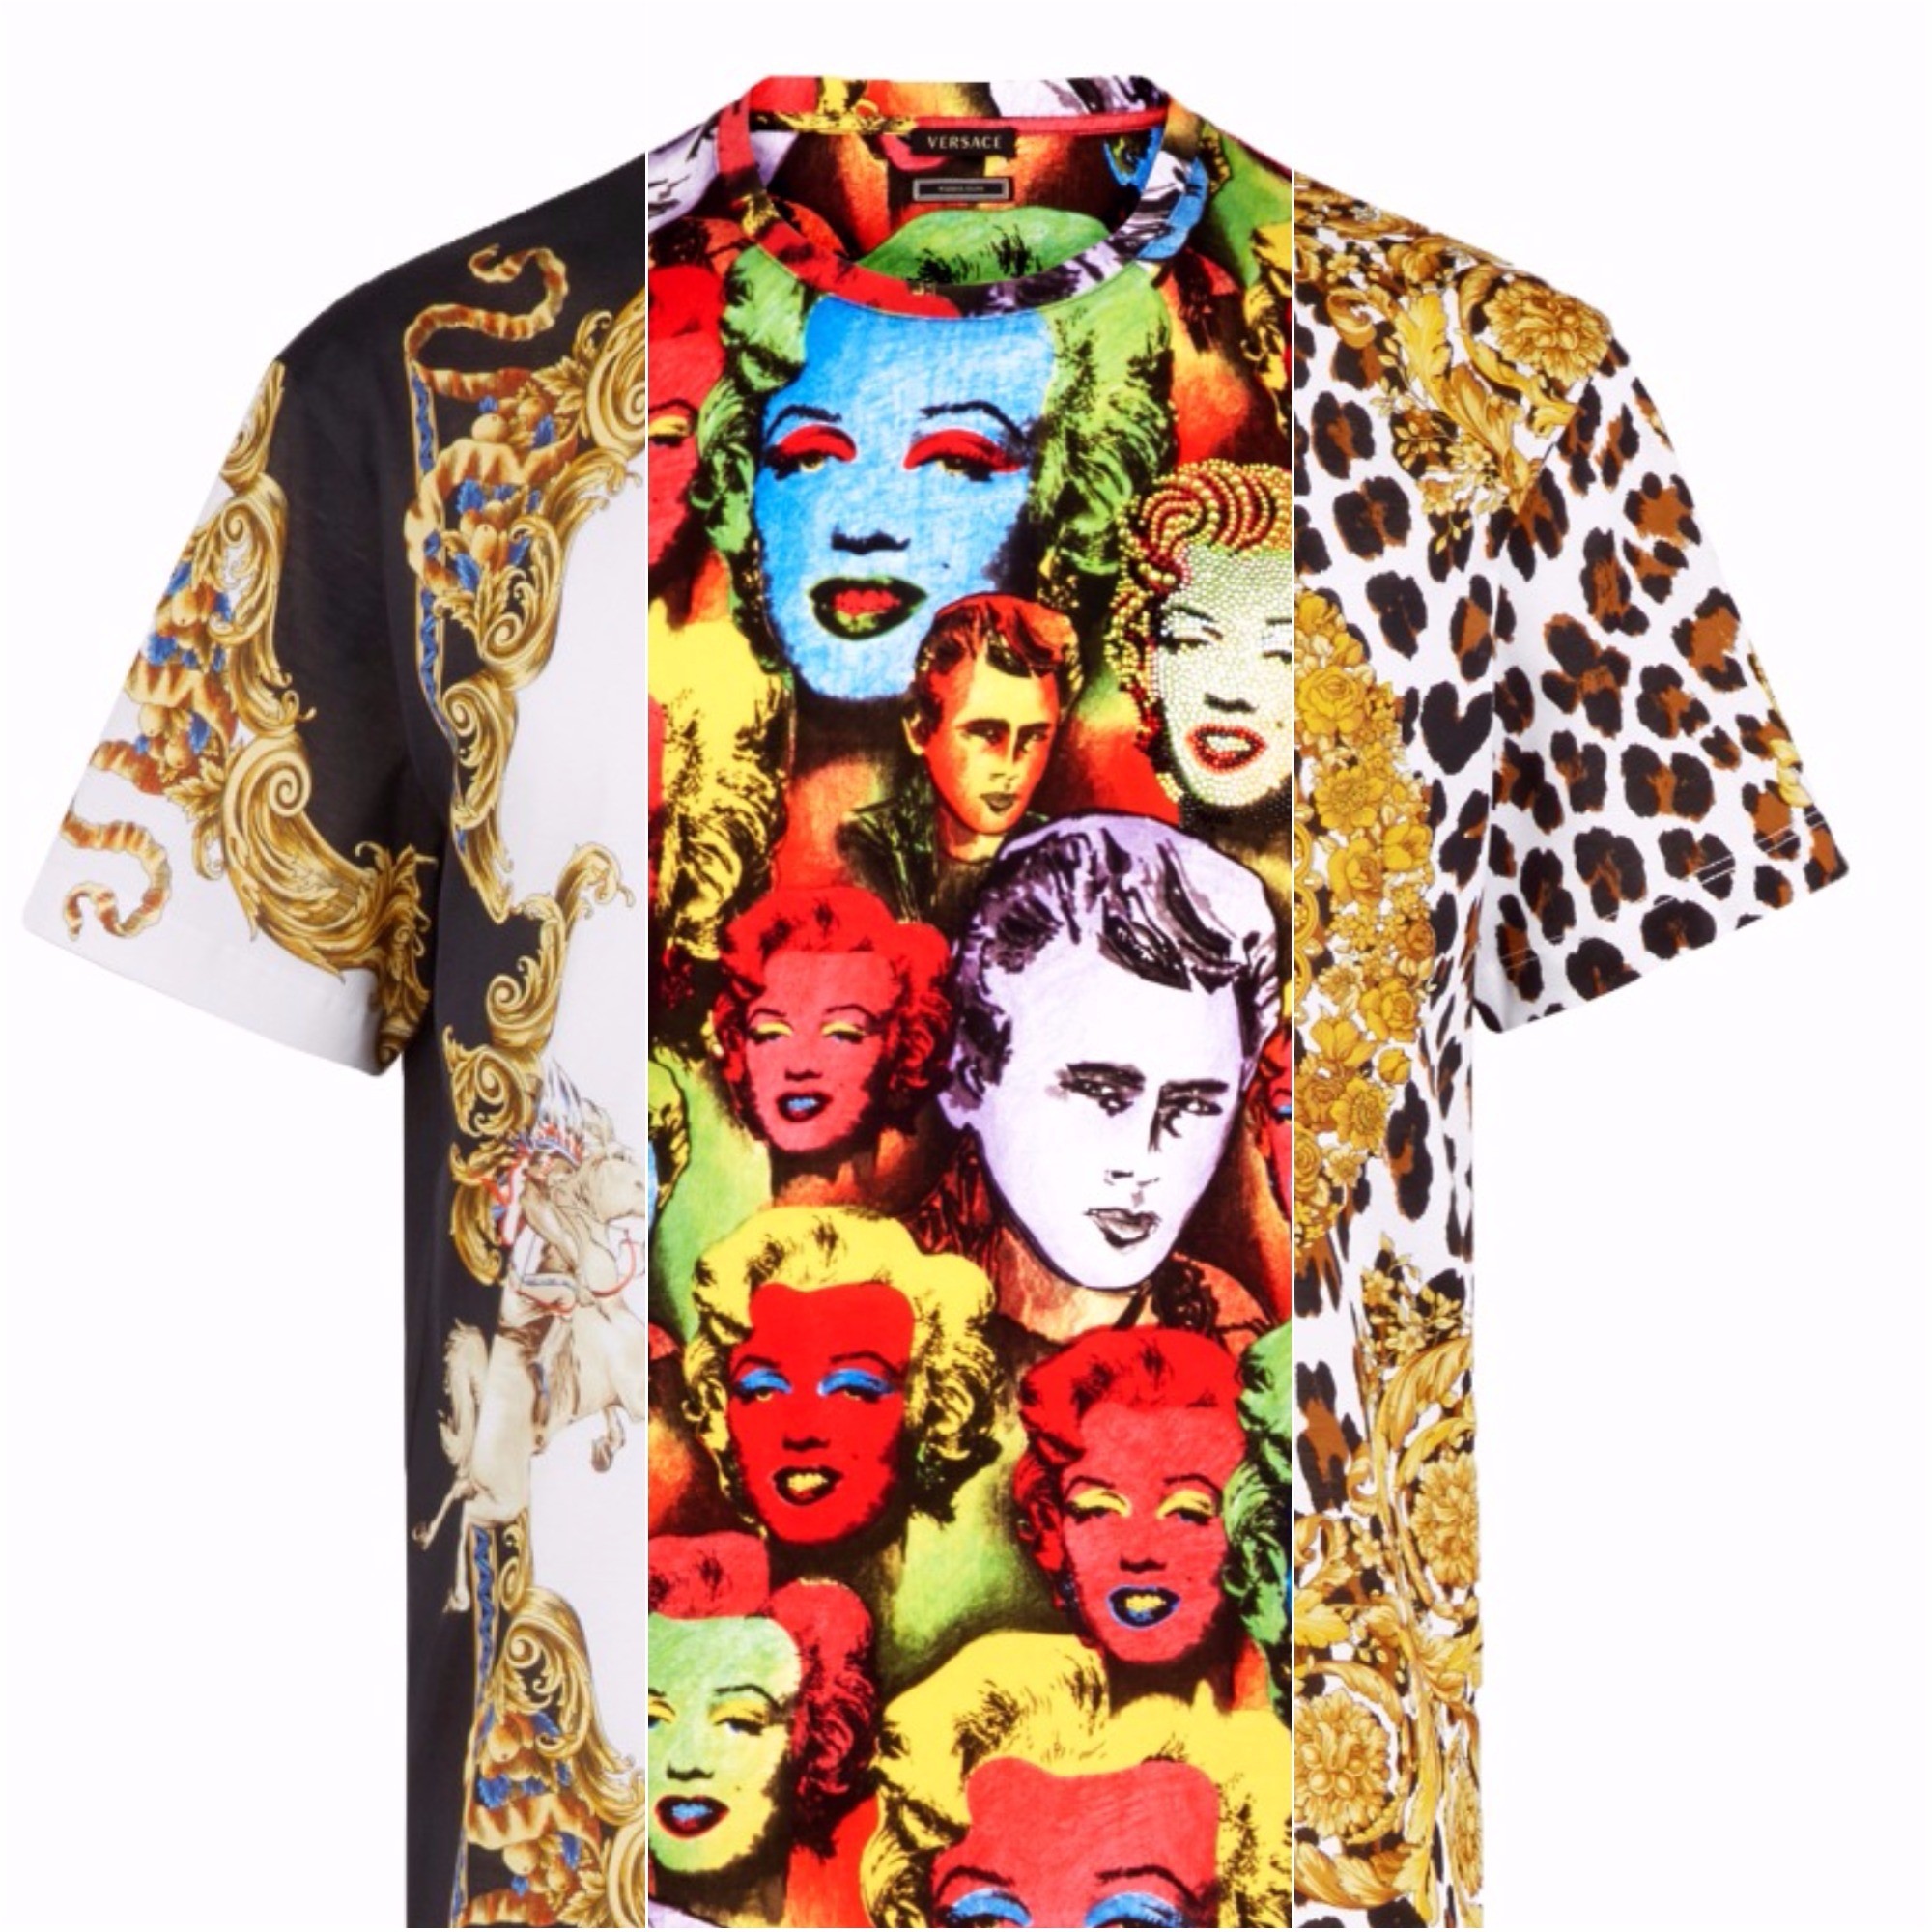 A nova coleção de camisetas estampadas da Versace (Foto: Divulgação)